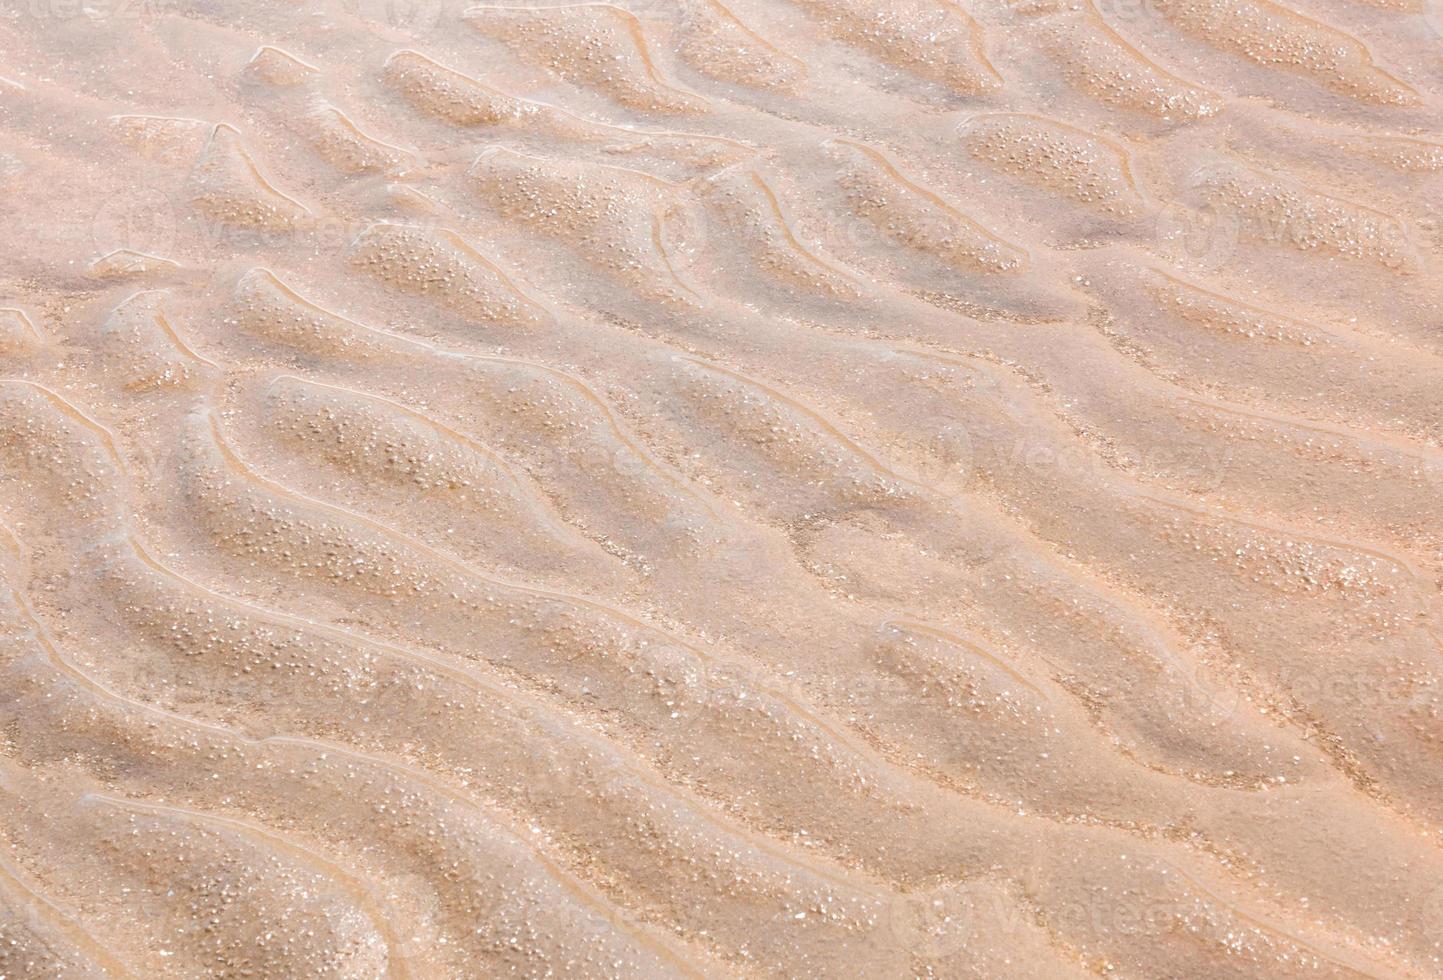 onda na areia fina quando o mar está vazante foto